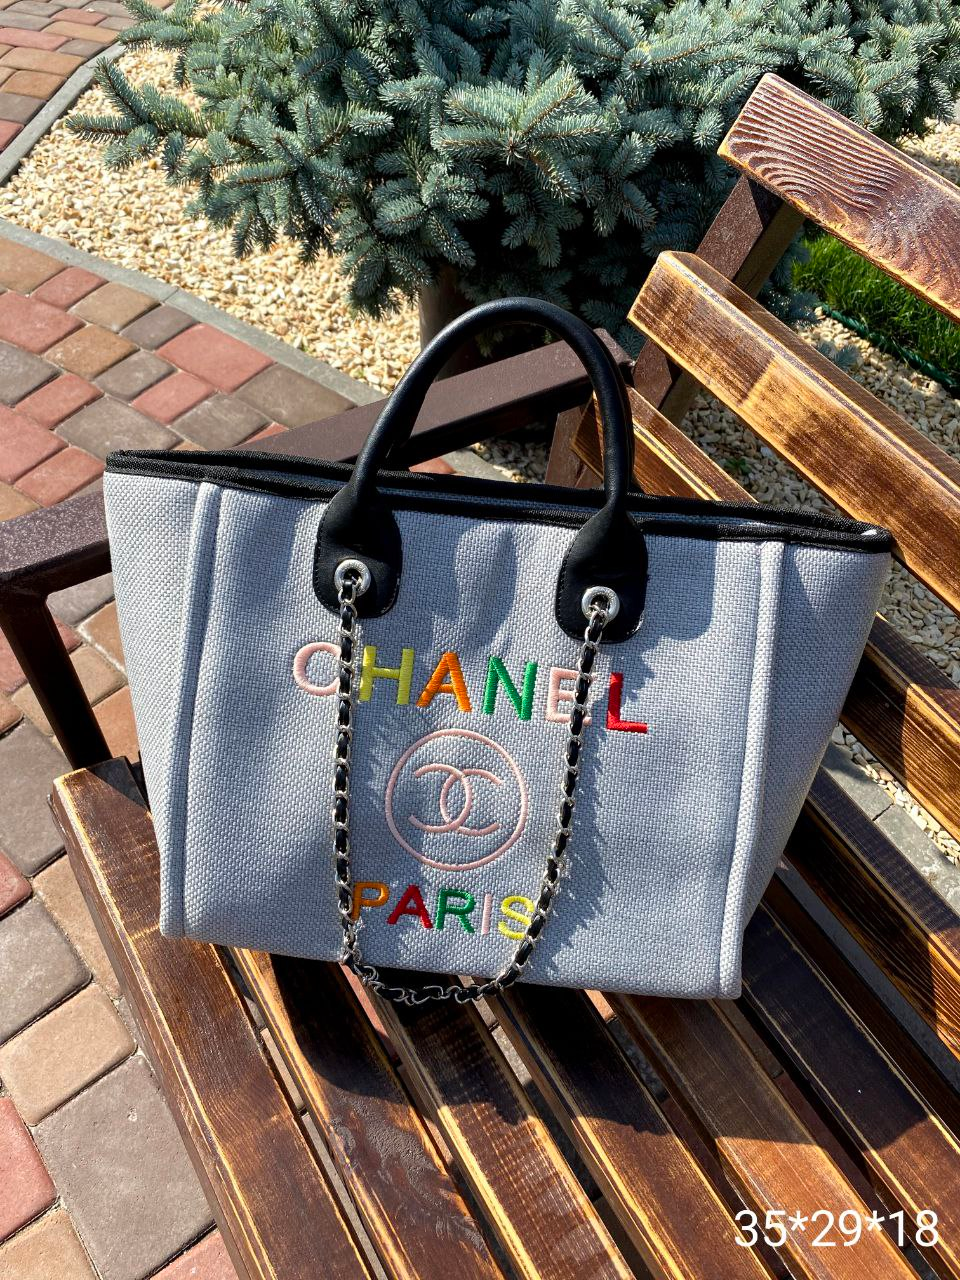 Жіноча сумка Chanel, тканинної шопер, 35*29*18  см, 931127-1